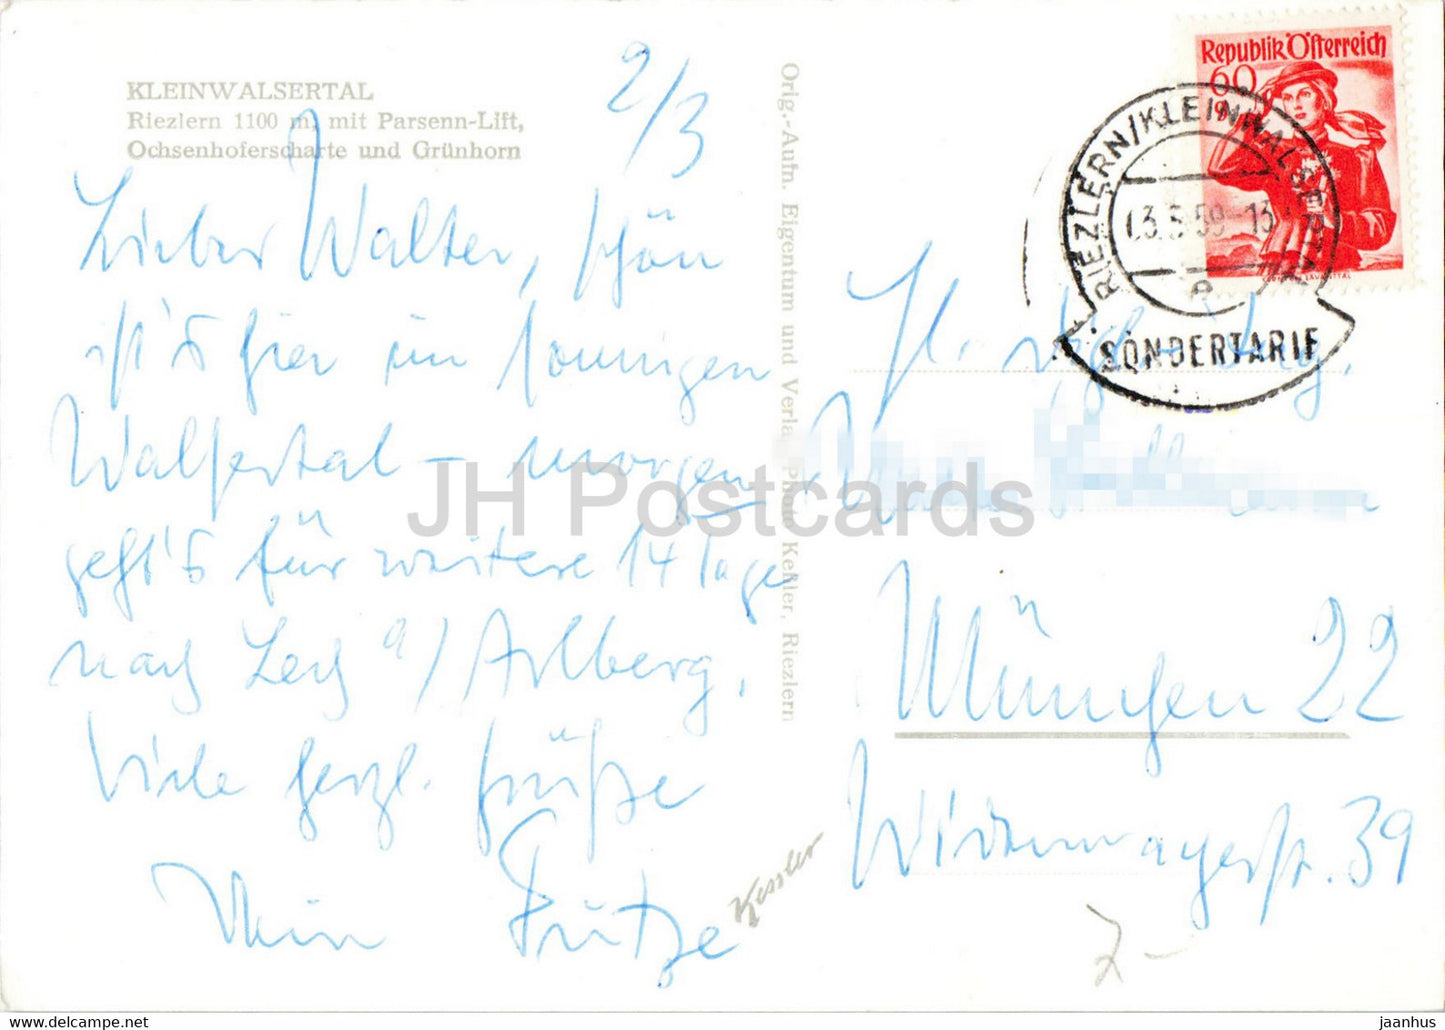 Kleinwalsertal - Riezlern 1100 m mit Parsennlift - Ochsenhoferscharte und Grunhon alte Postkarte - 1959 - Österreich - gebraucht